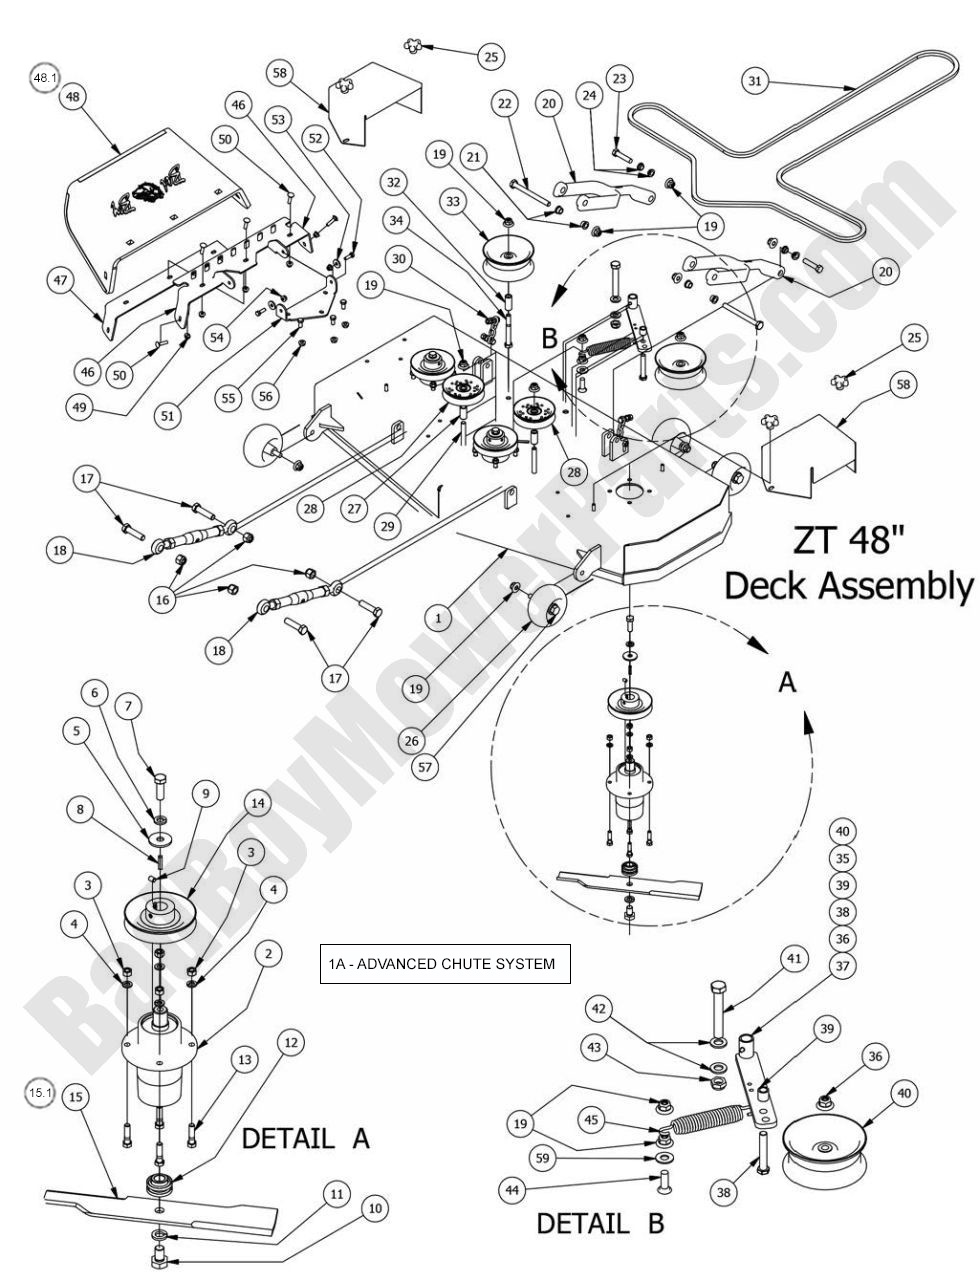 2014 ZT Elite 48" Deck Assembly